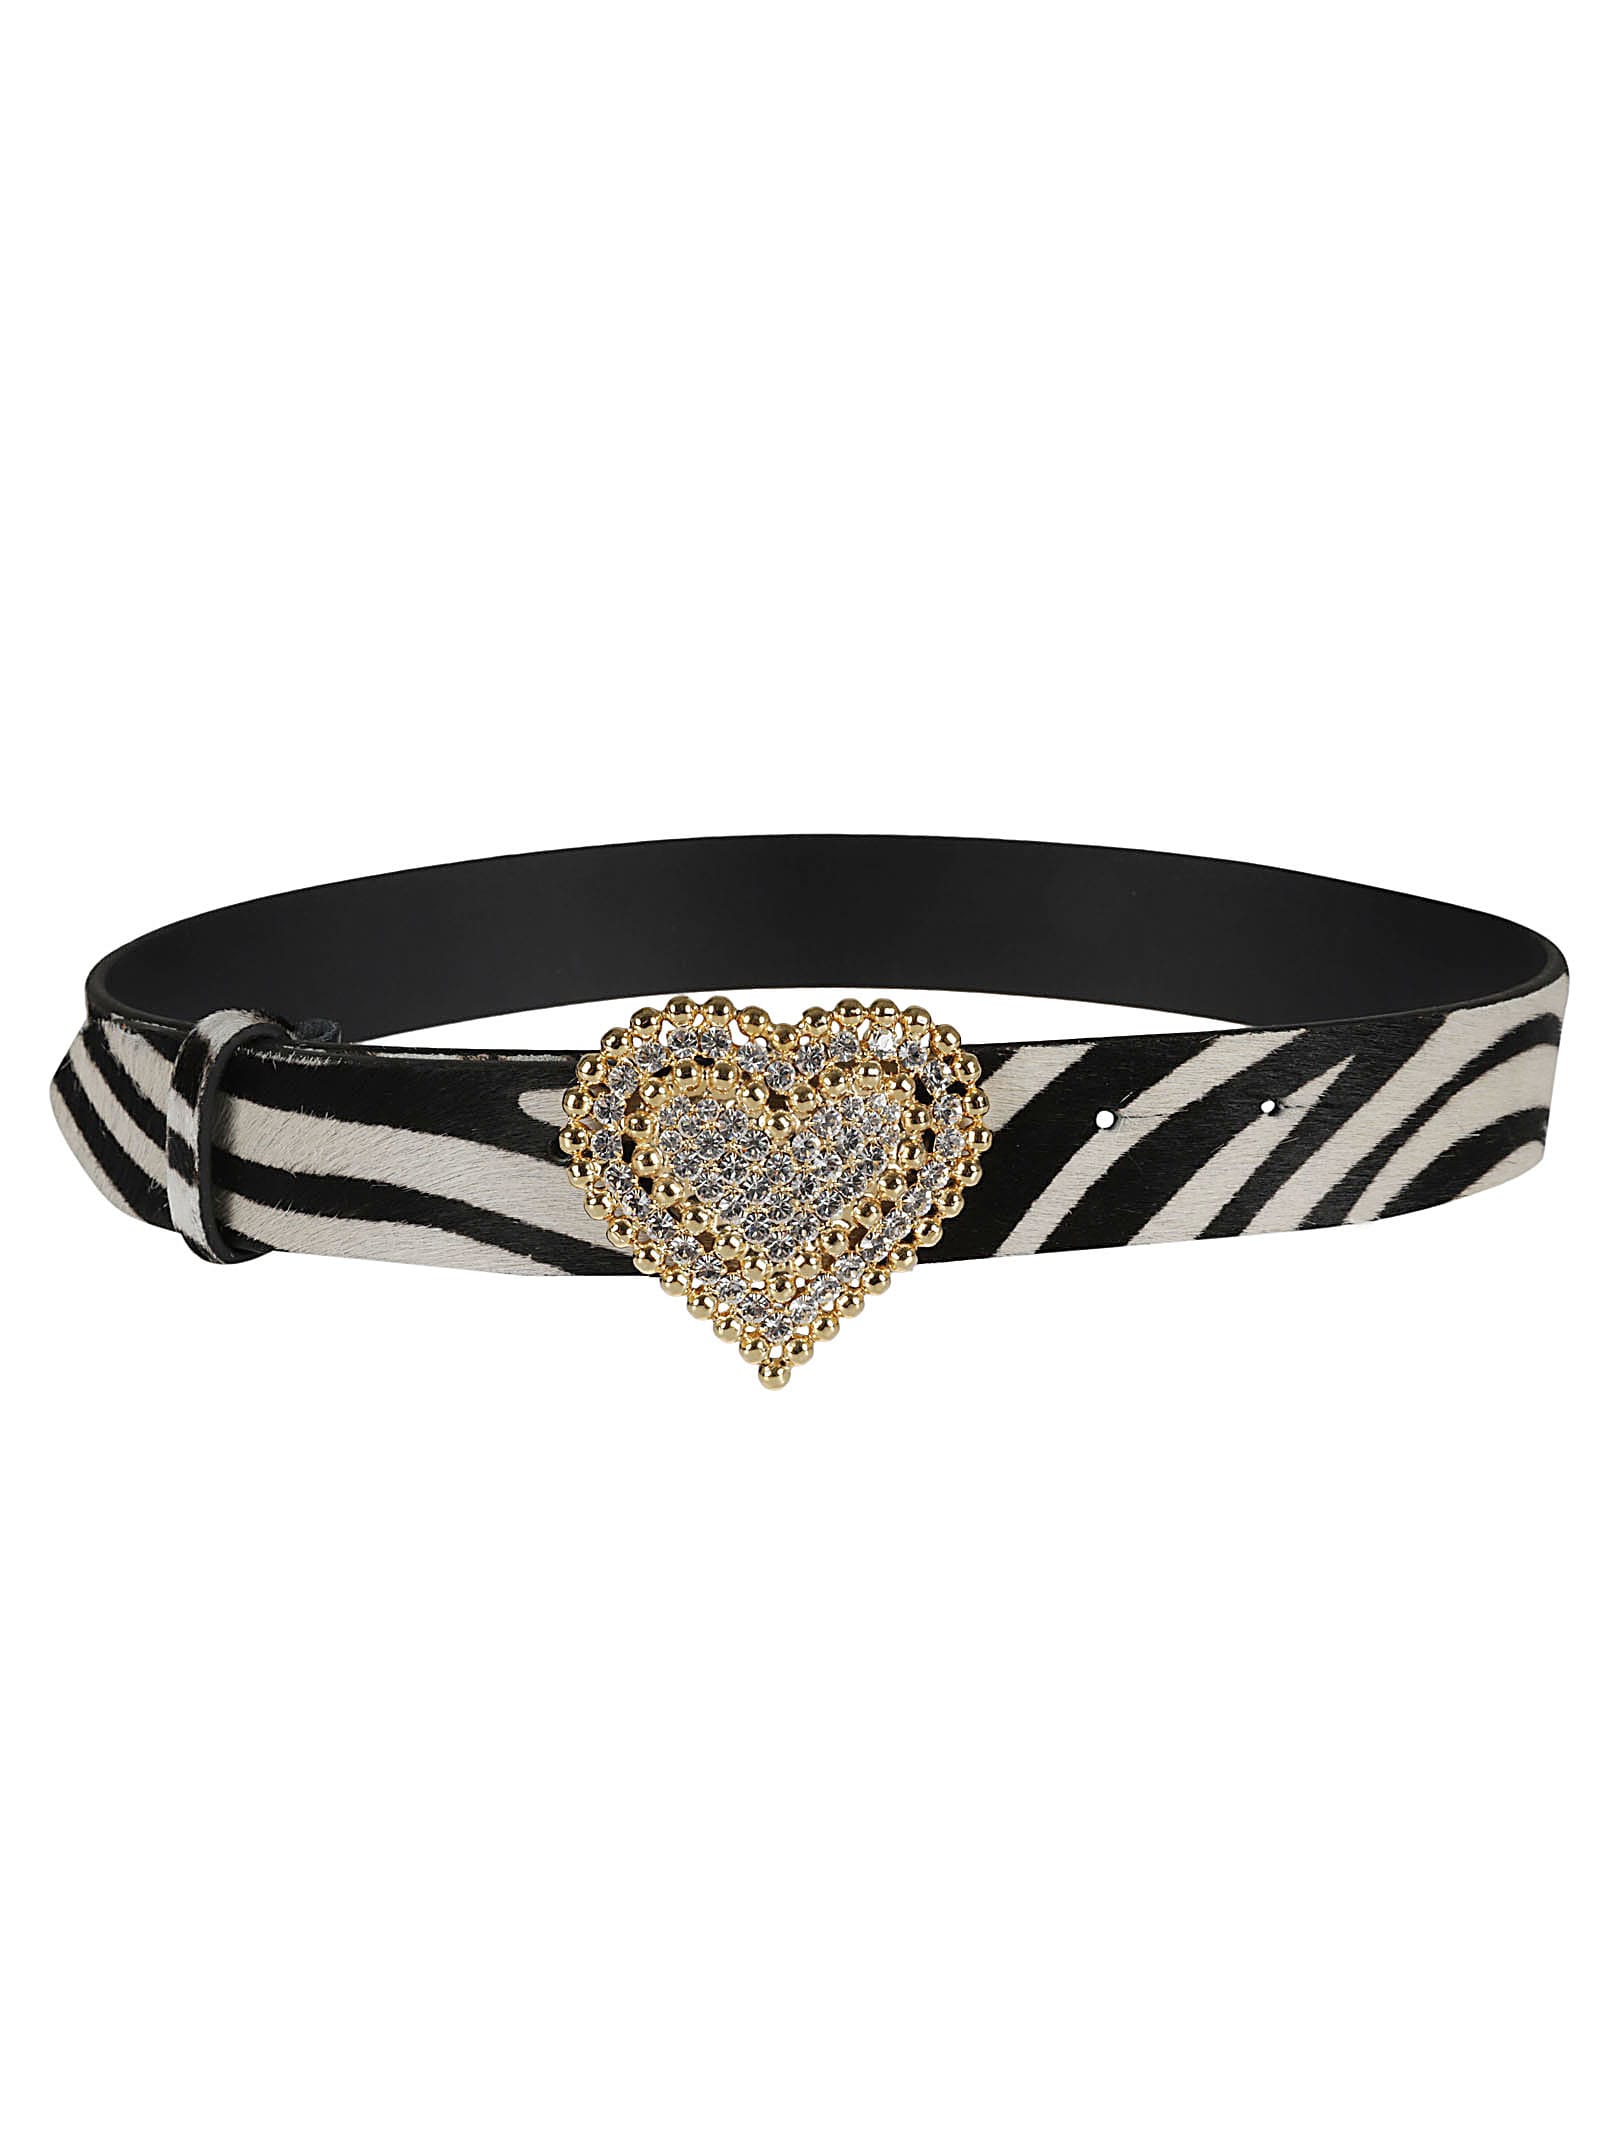 Alessandra Rich Crystal Embellished Heart Buckled Belt